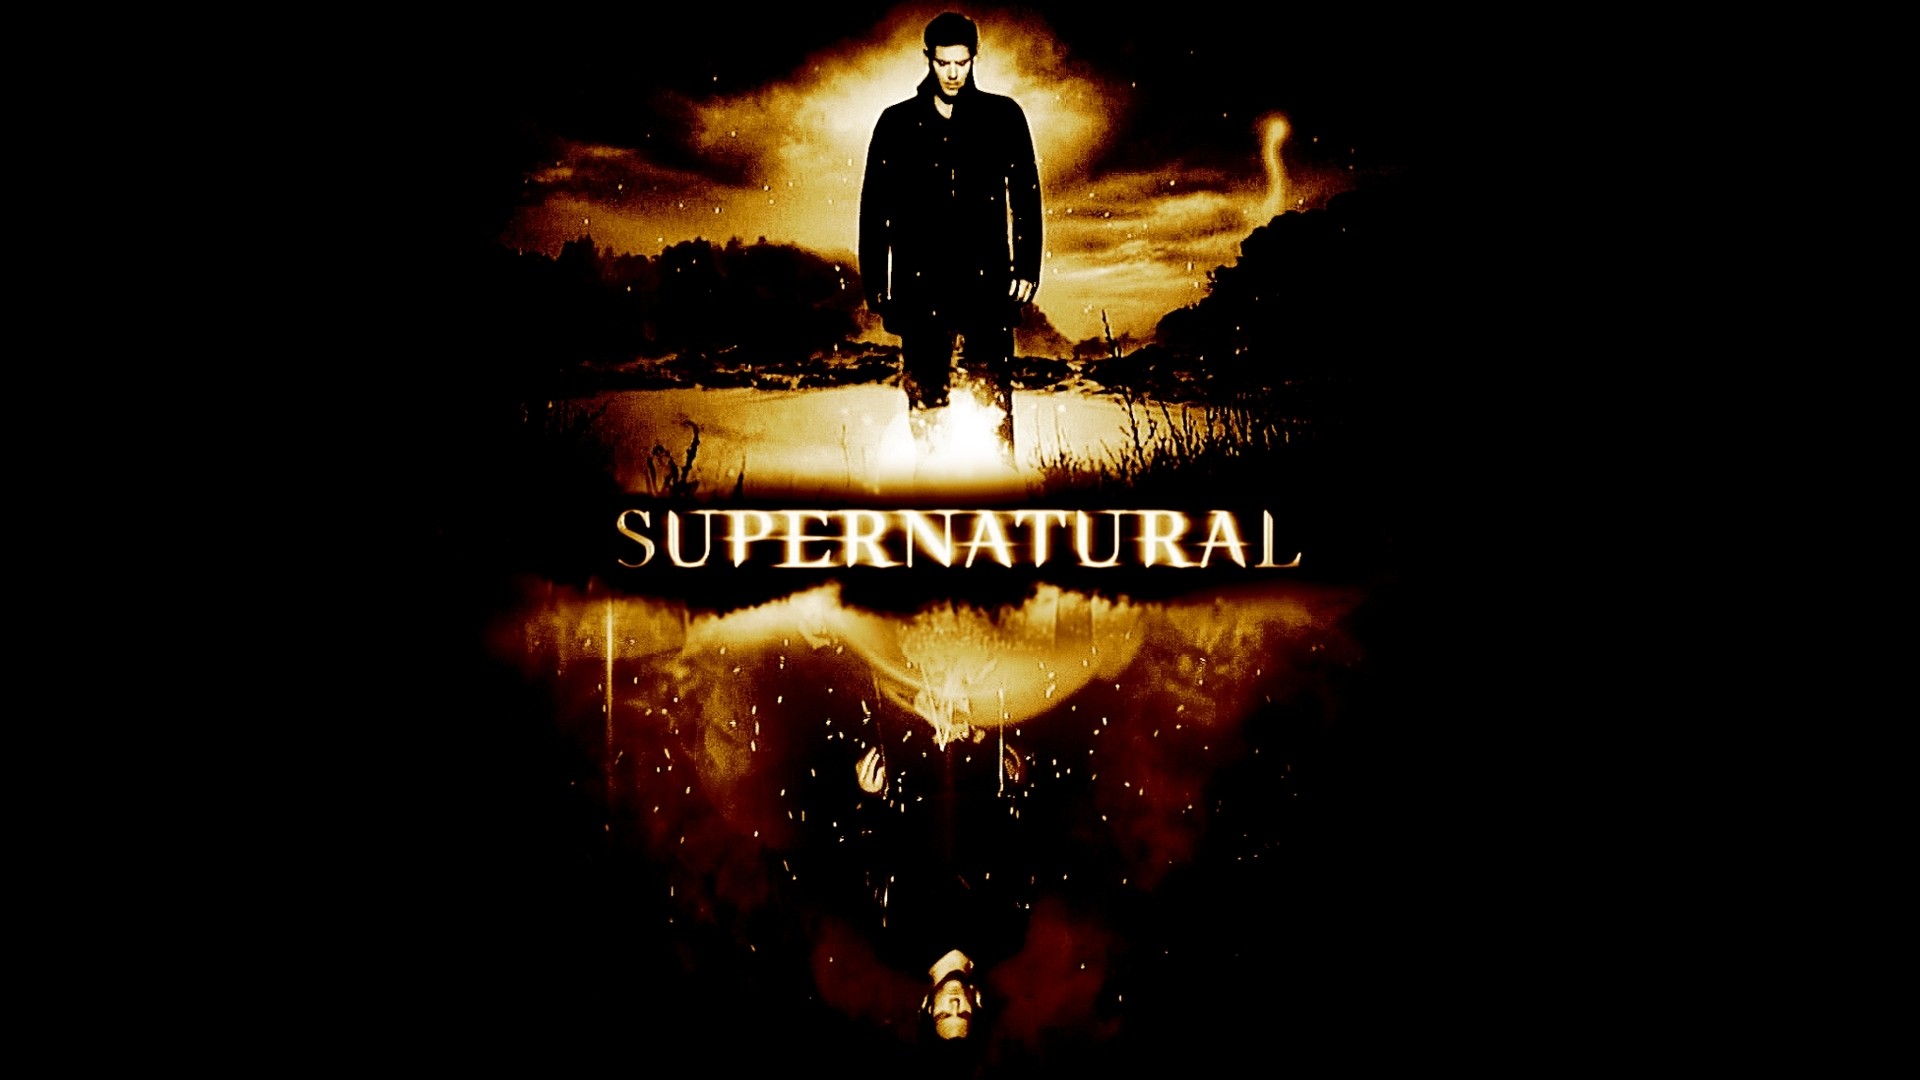 Supernatural Supernatural